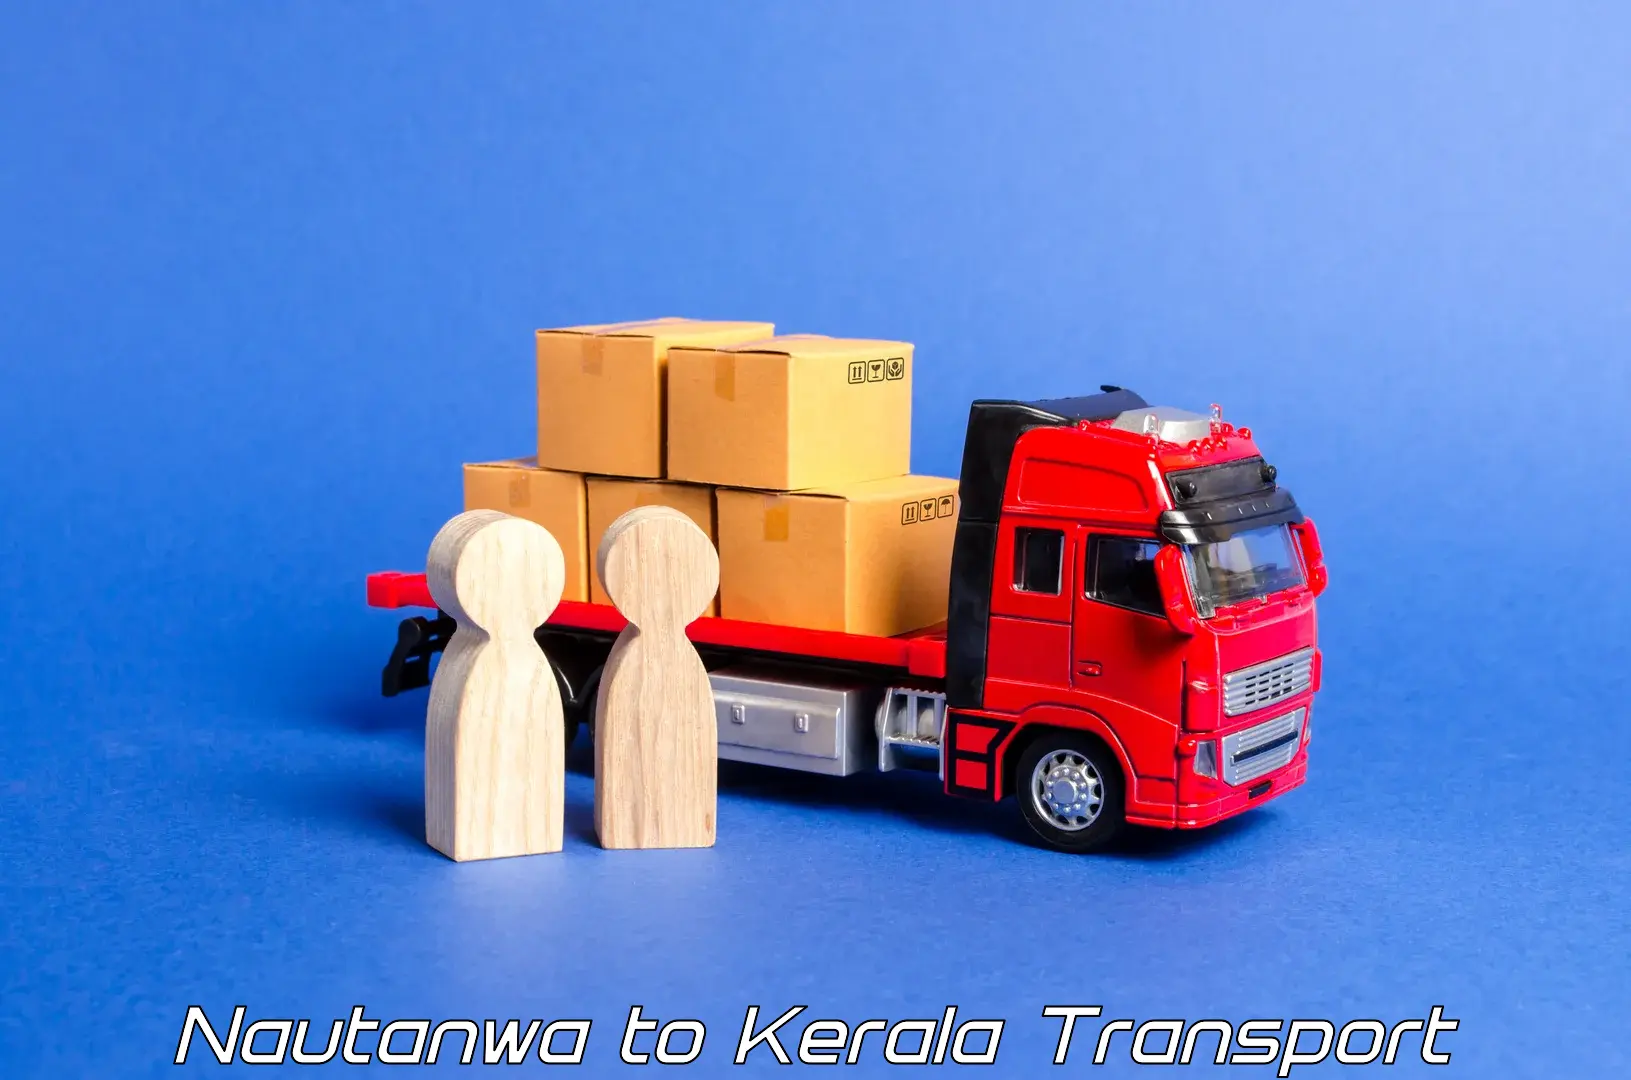 Container transport service Nautanwa to Pandikkad